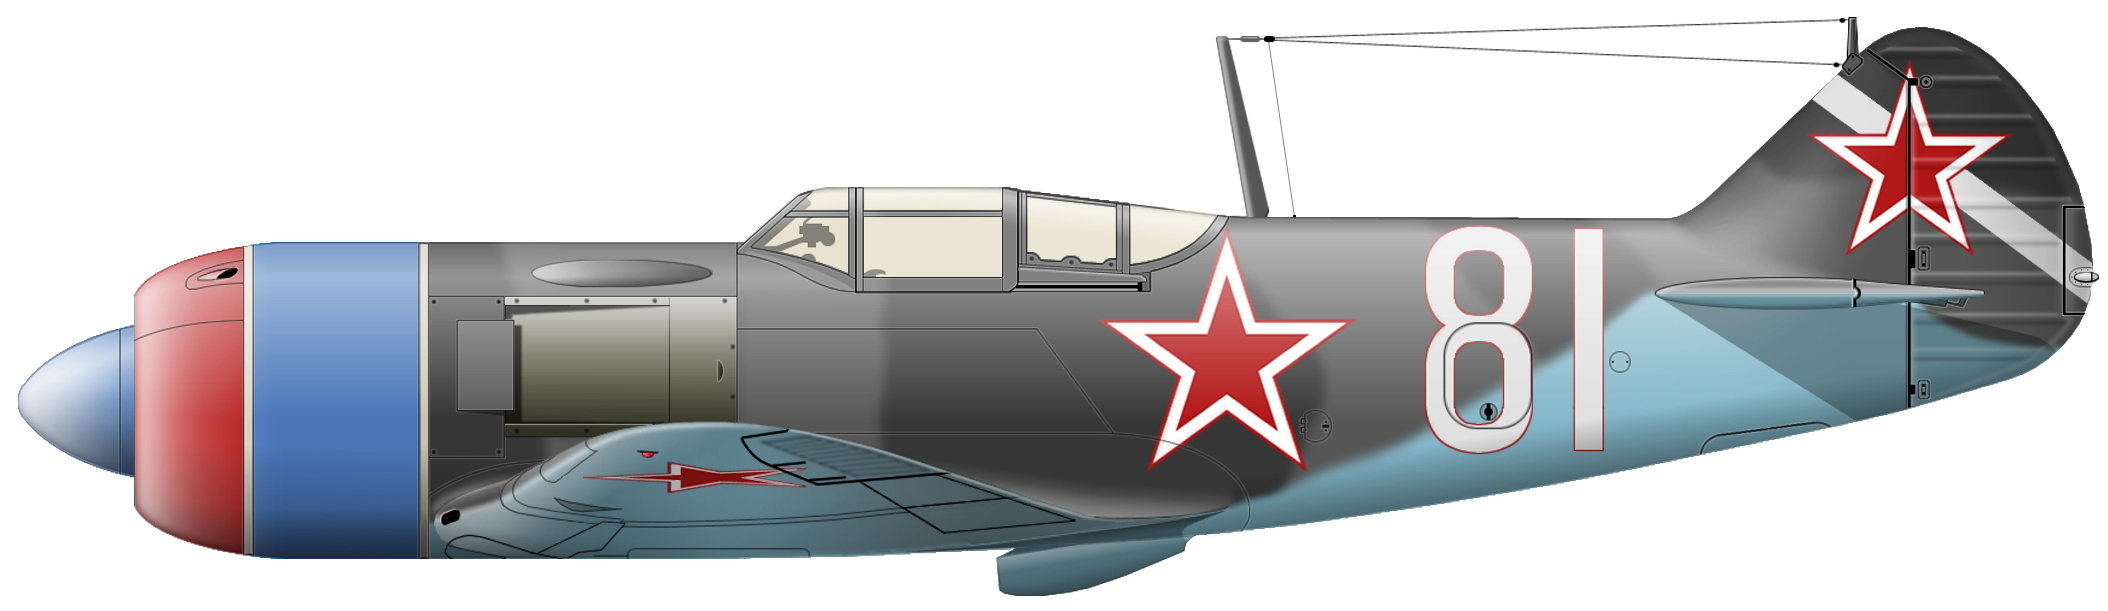 Ля 7 5. Ла 7. Ла-7 истребитель. Самолет Кожедуба ла 7. Самолёт СССР ла 7.